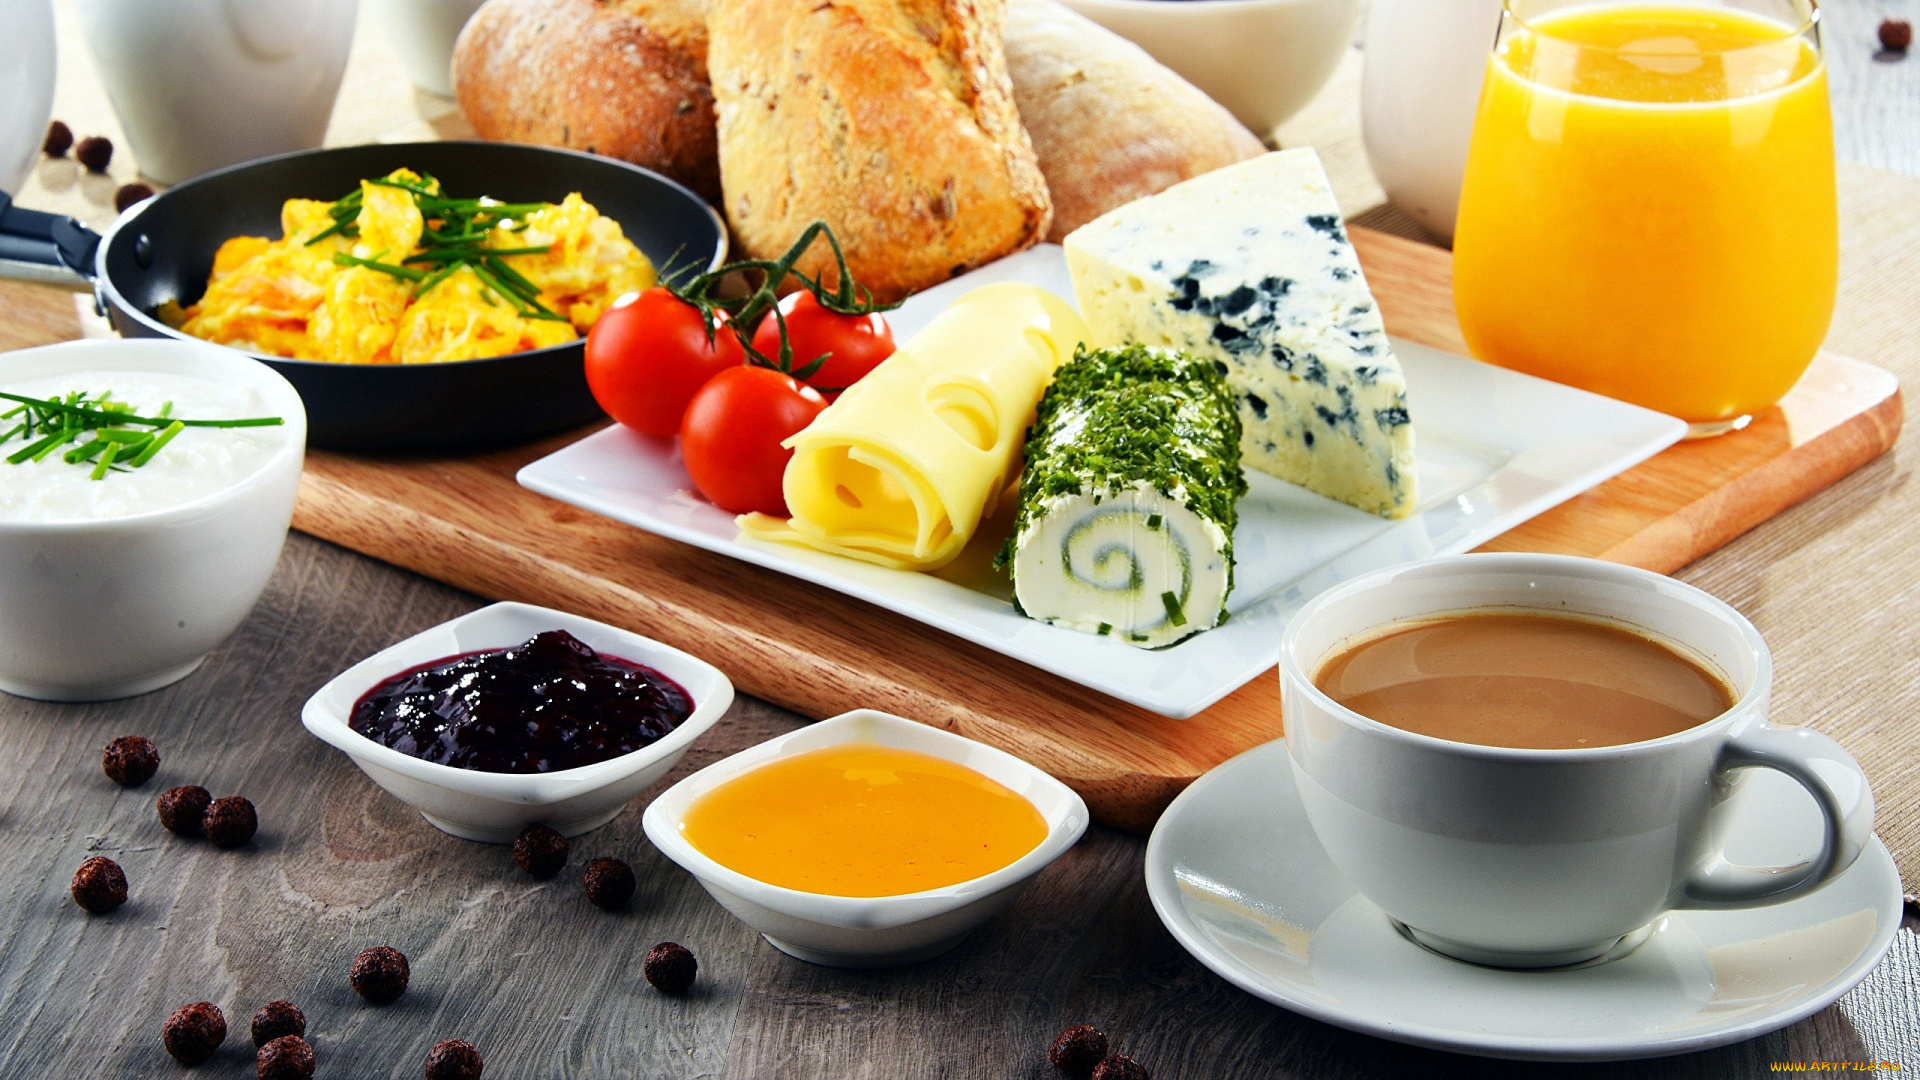 еда, разное, завтрак, хлеб, сыр, джем, мед, кофе, сок, яичница